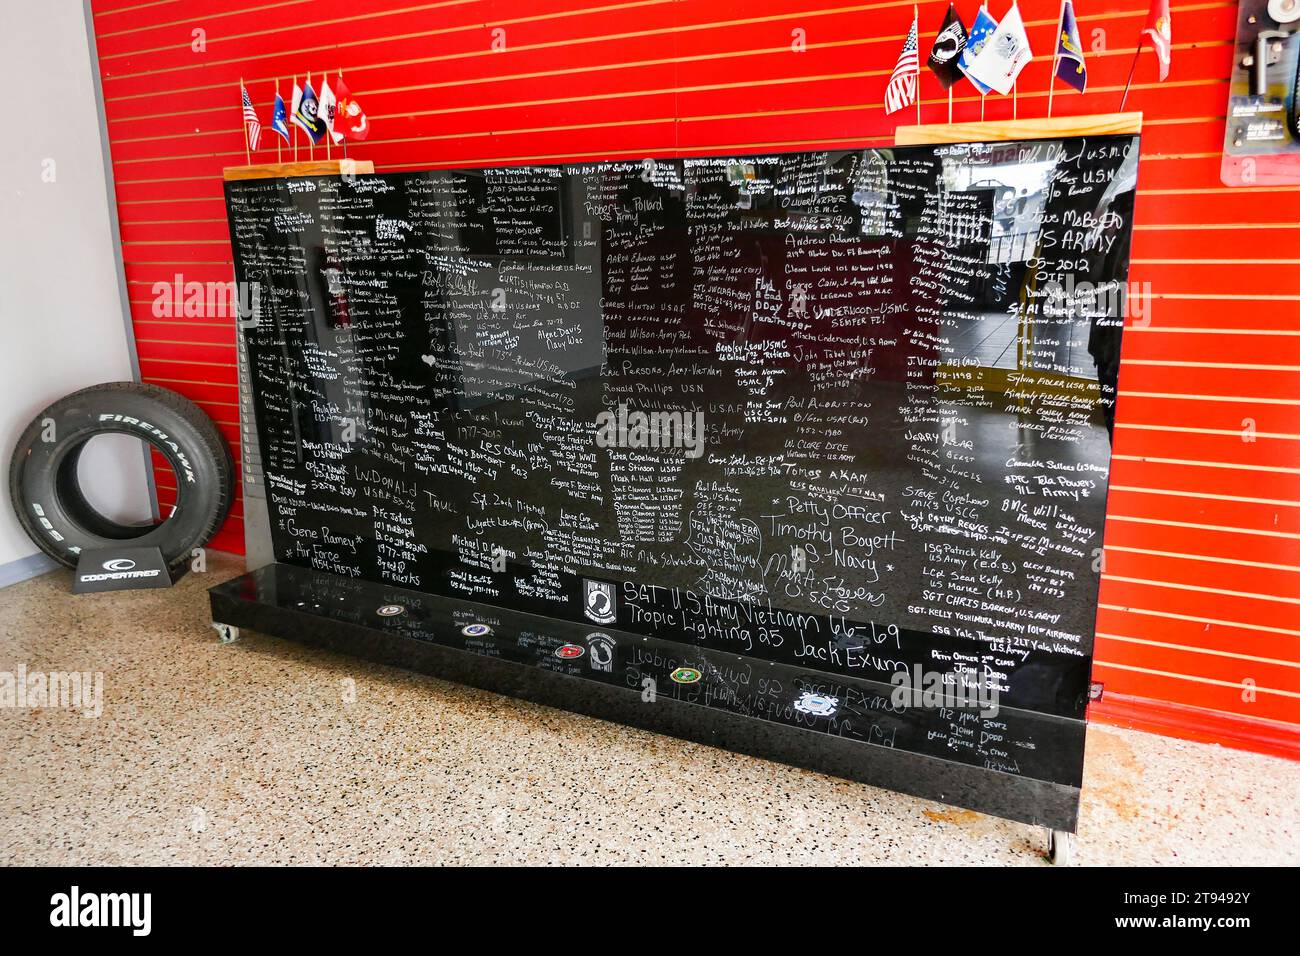 Namen der Kunden, die beim US-Militär in einem Reifenladen in Nord-Florida gedient haben. Stockfoto